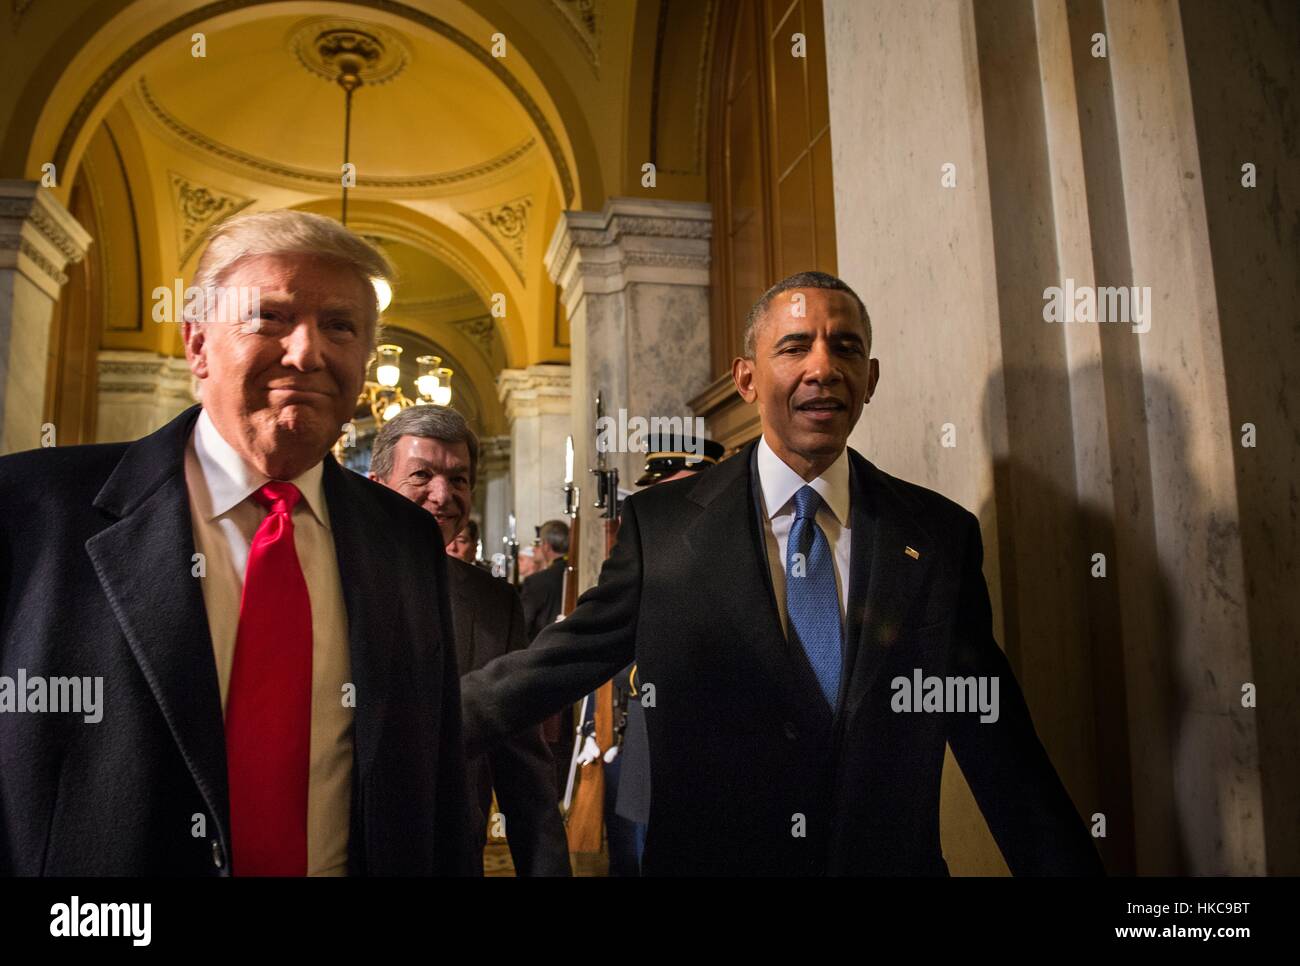 US-Präsident Barack Obama und gewählter Präsident Donald Trump kommen auf dem US-Kapitol für die 58. Presidential Inauguration 20. Januar 2017 in Washington, DC. Stockfoto